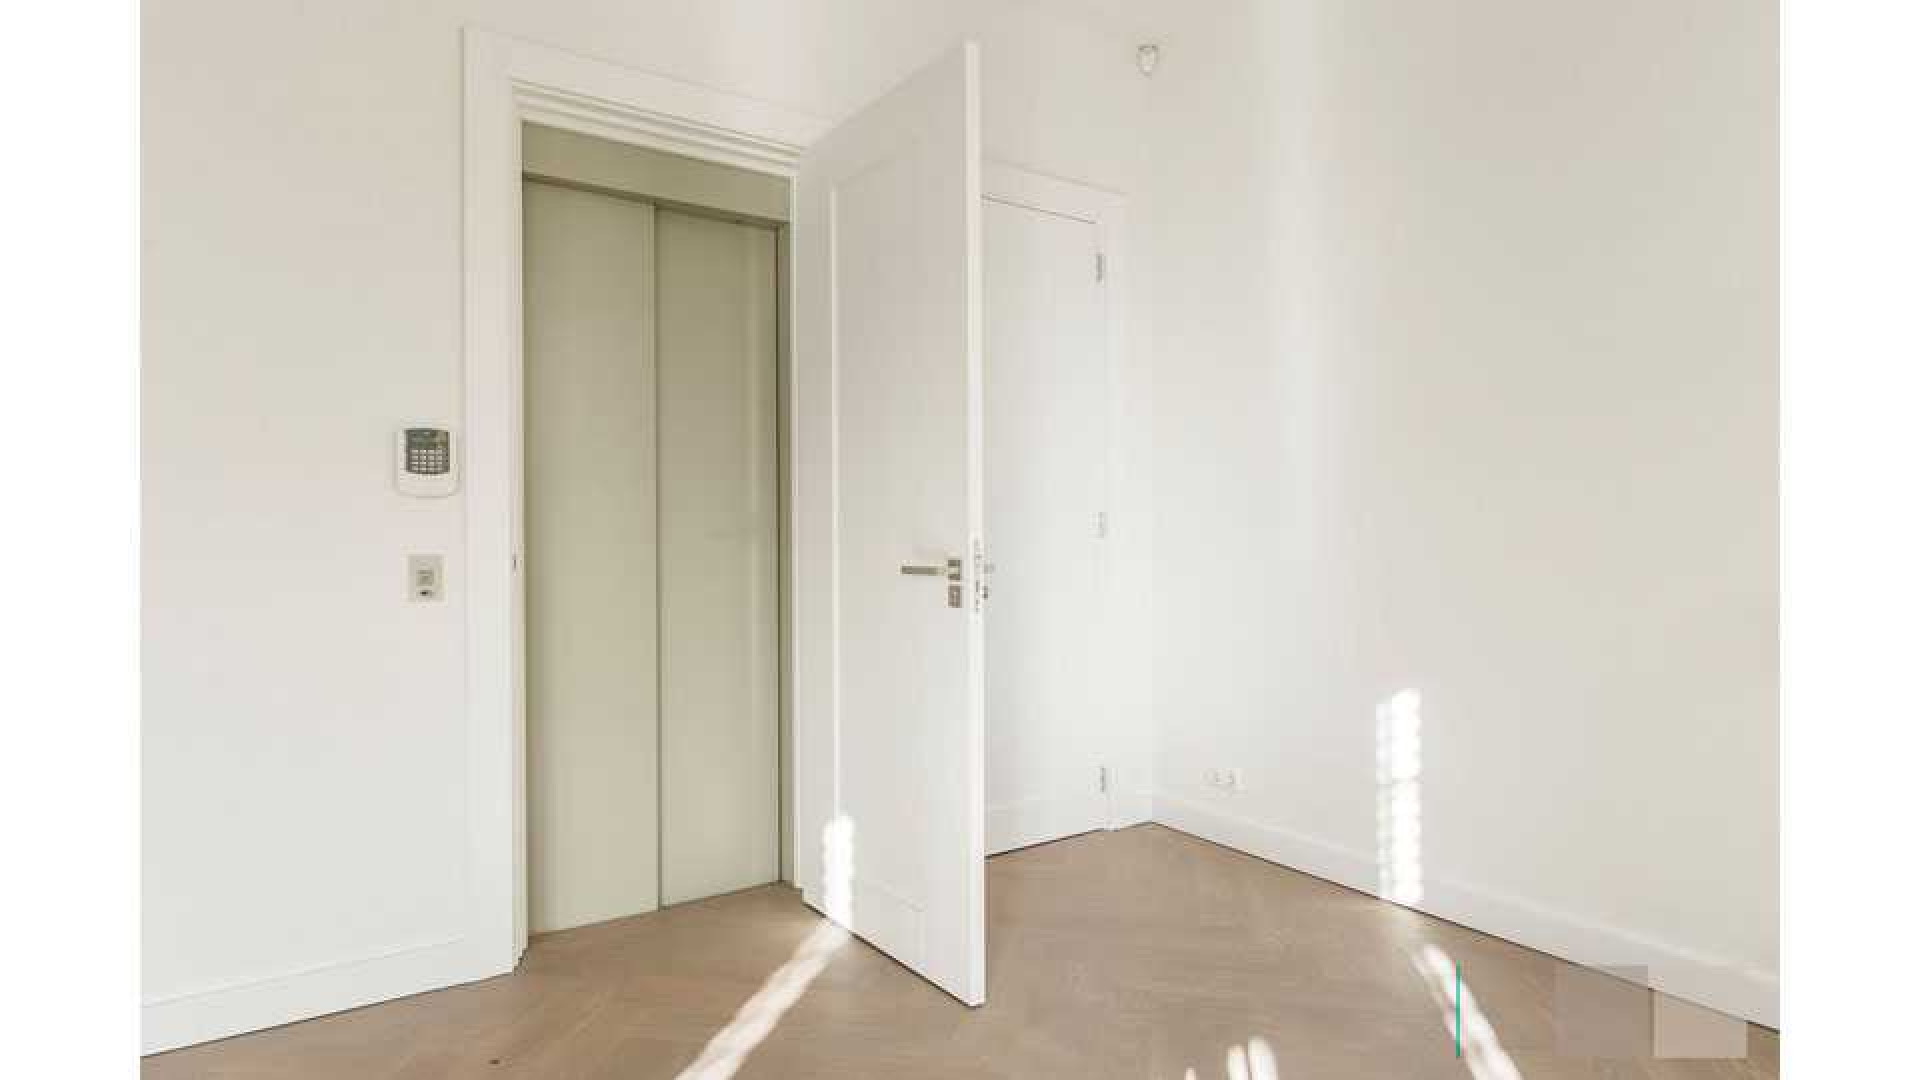 Leco van Zadelhoff verkoopt appartement in Amsterdam Zuid boven de vraagprijs. Zie foto's 5